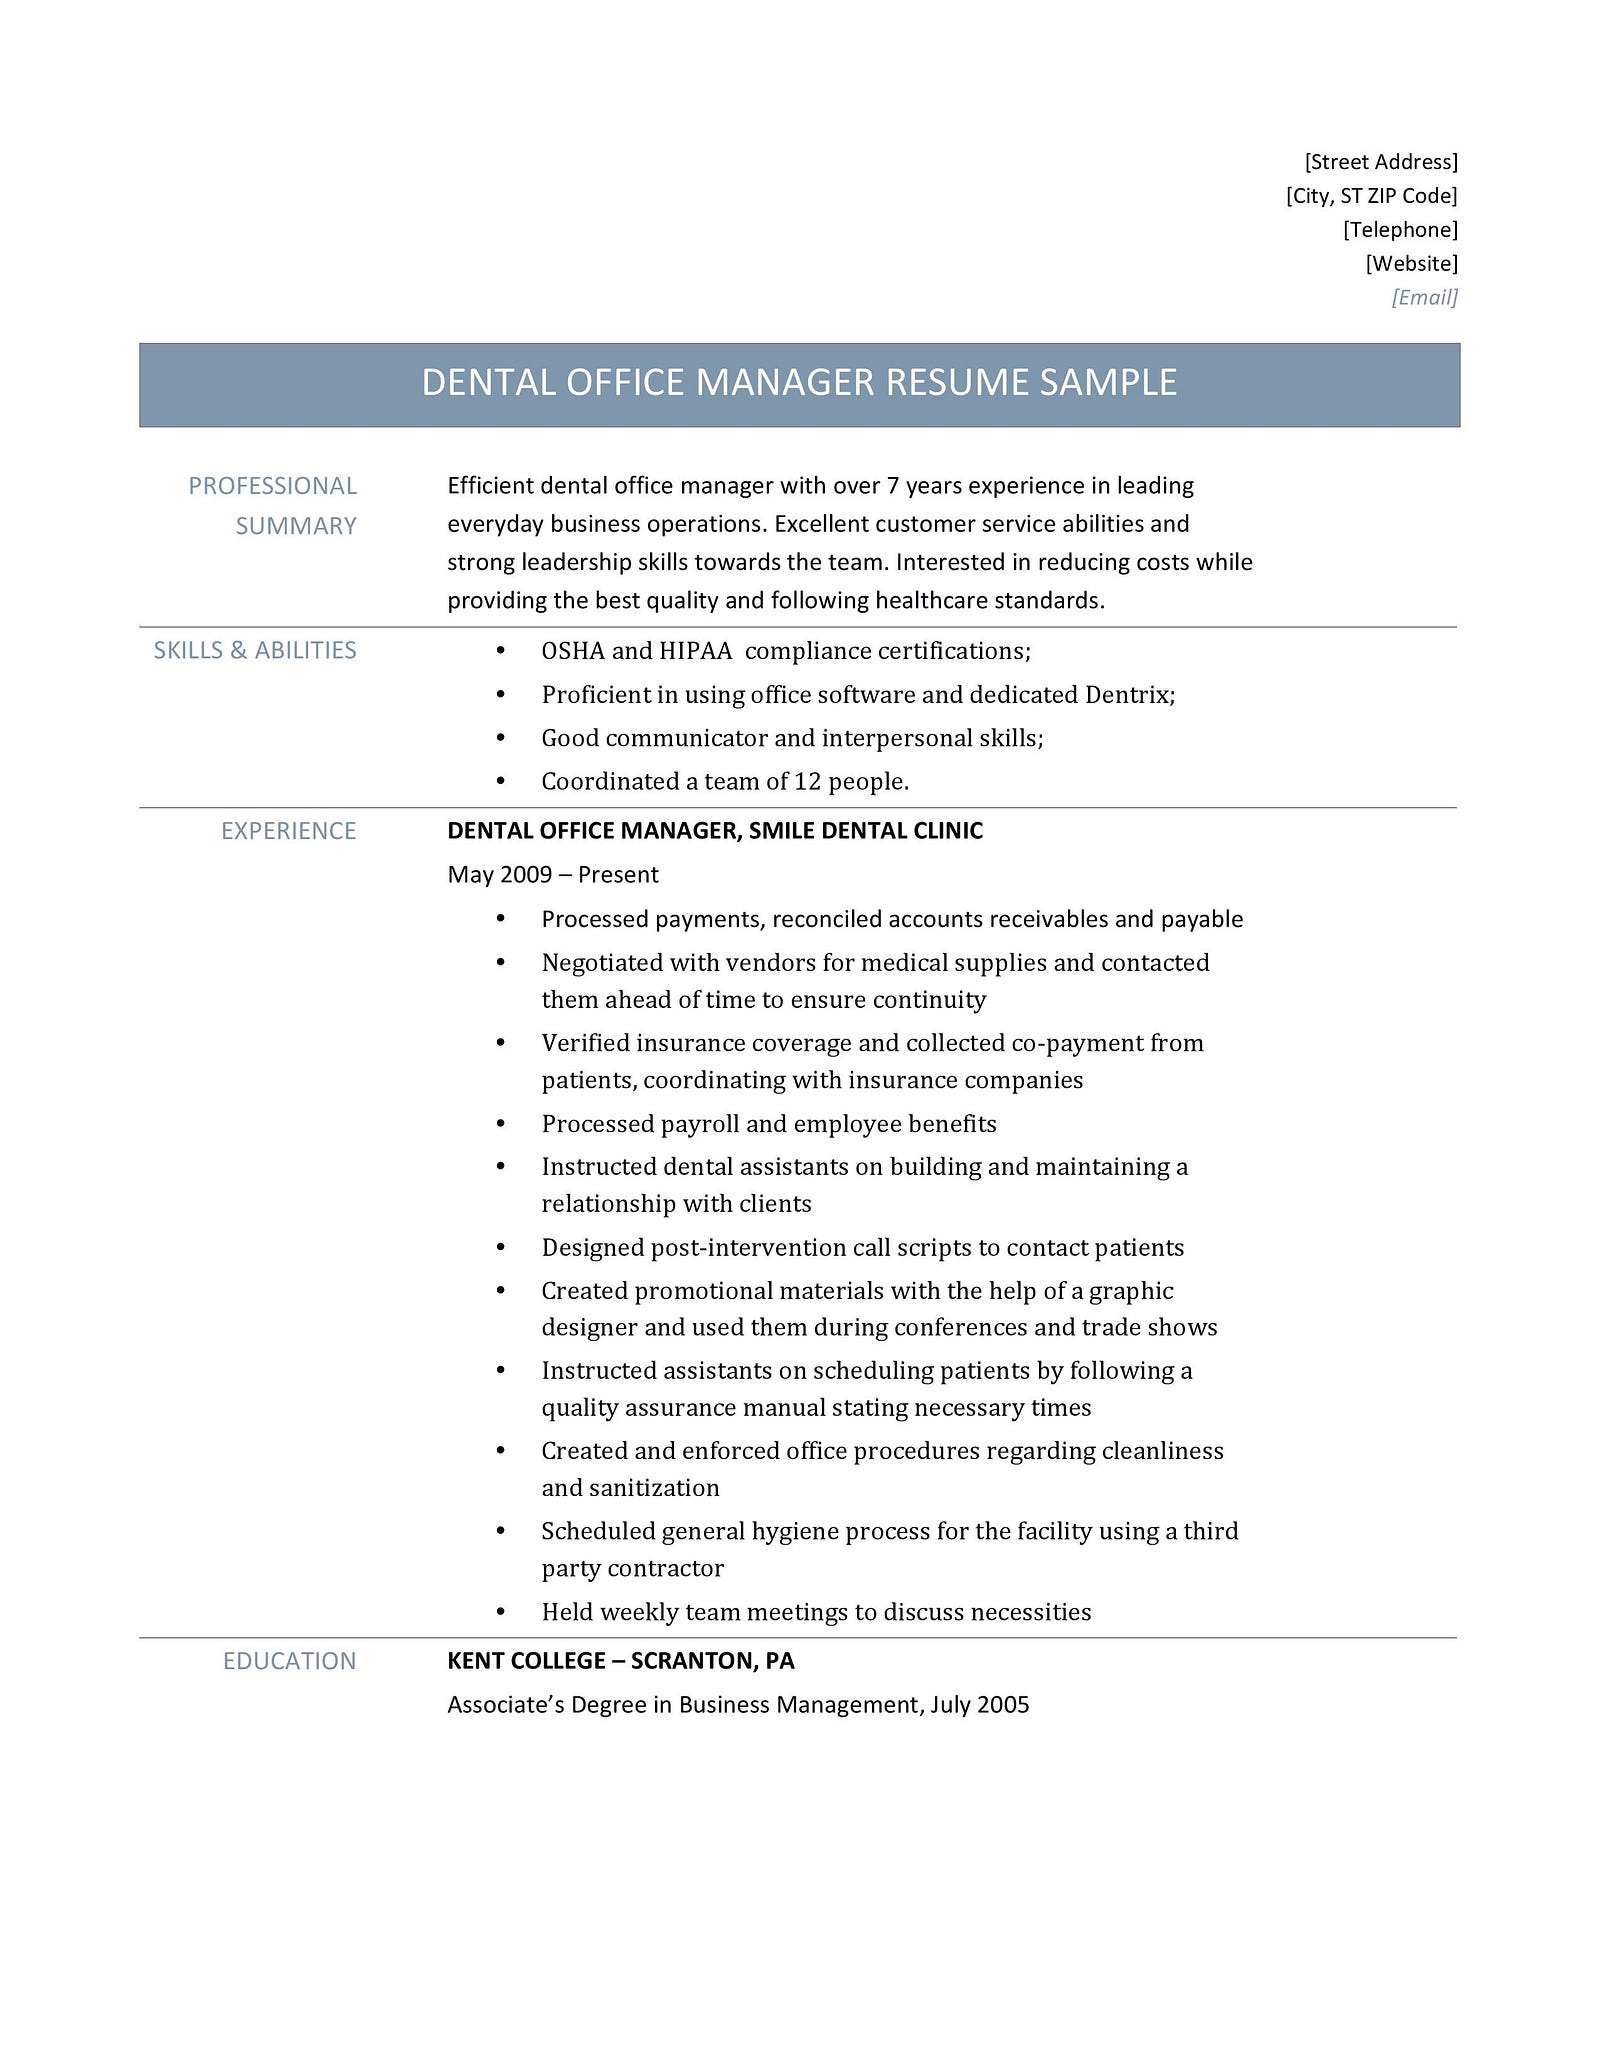 dental office manager resume samples  u2013 online resume